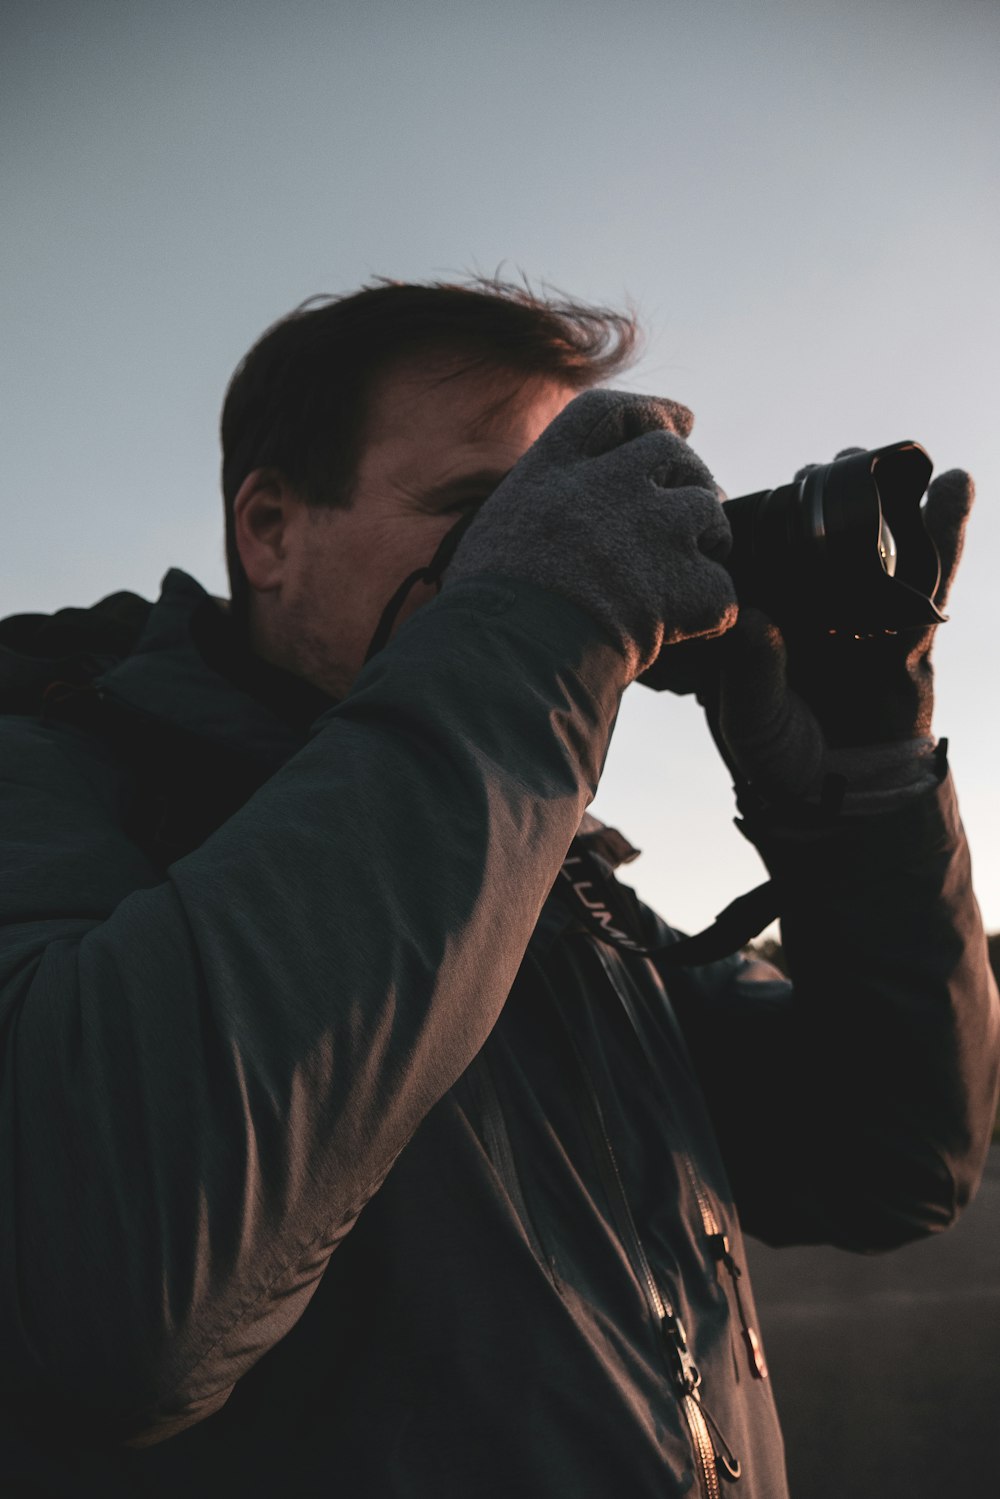 man in black jacket using binoculars during daytime